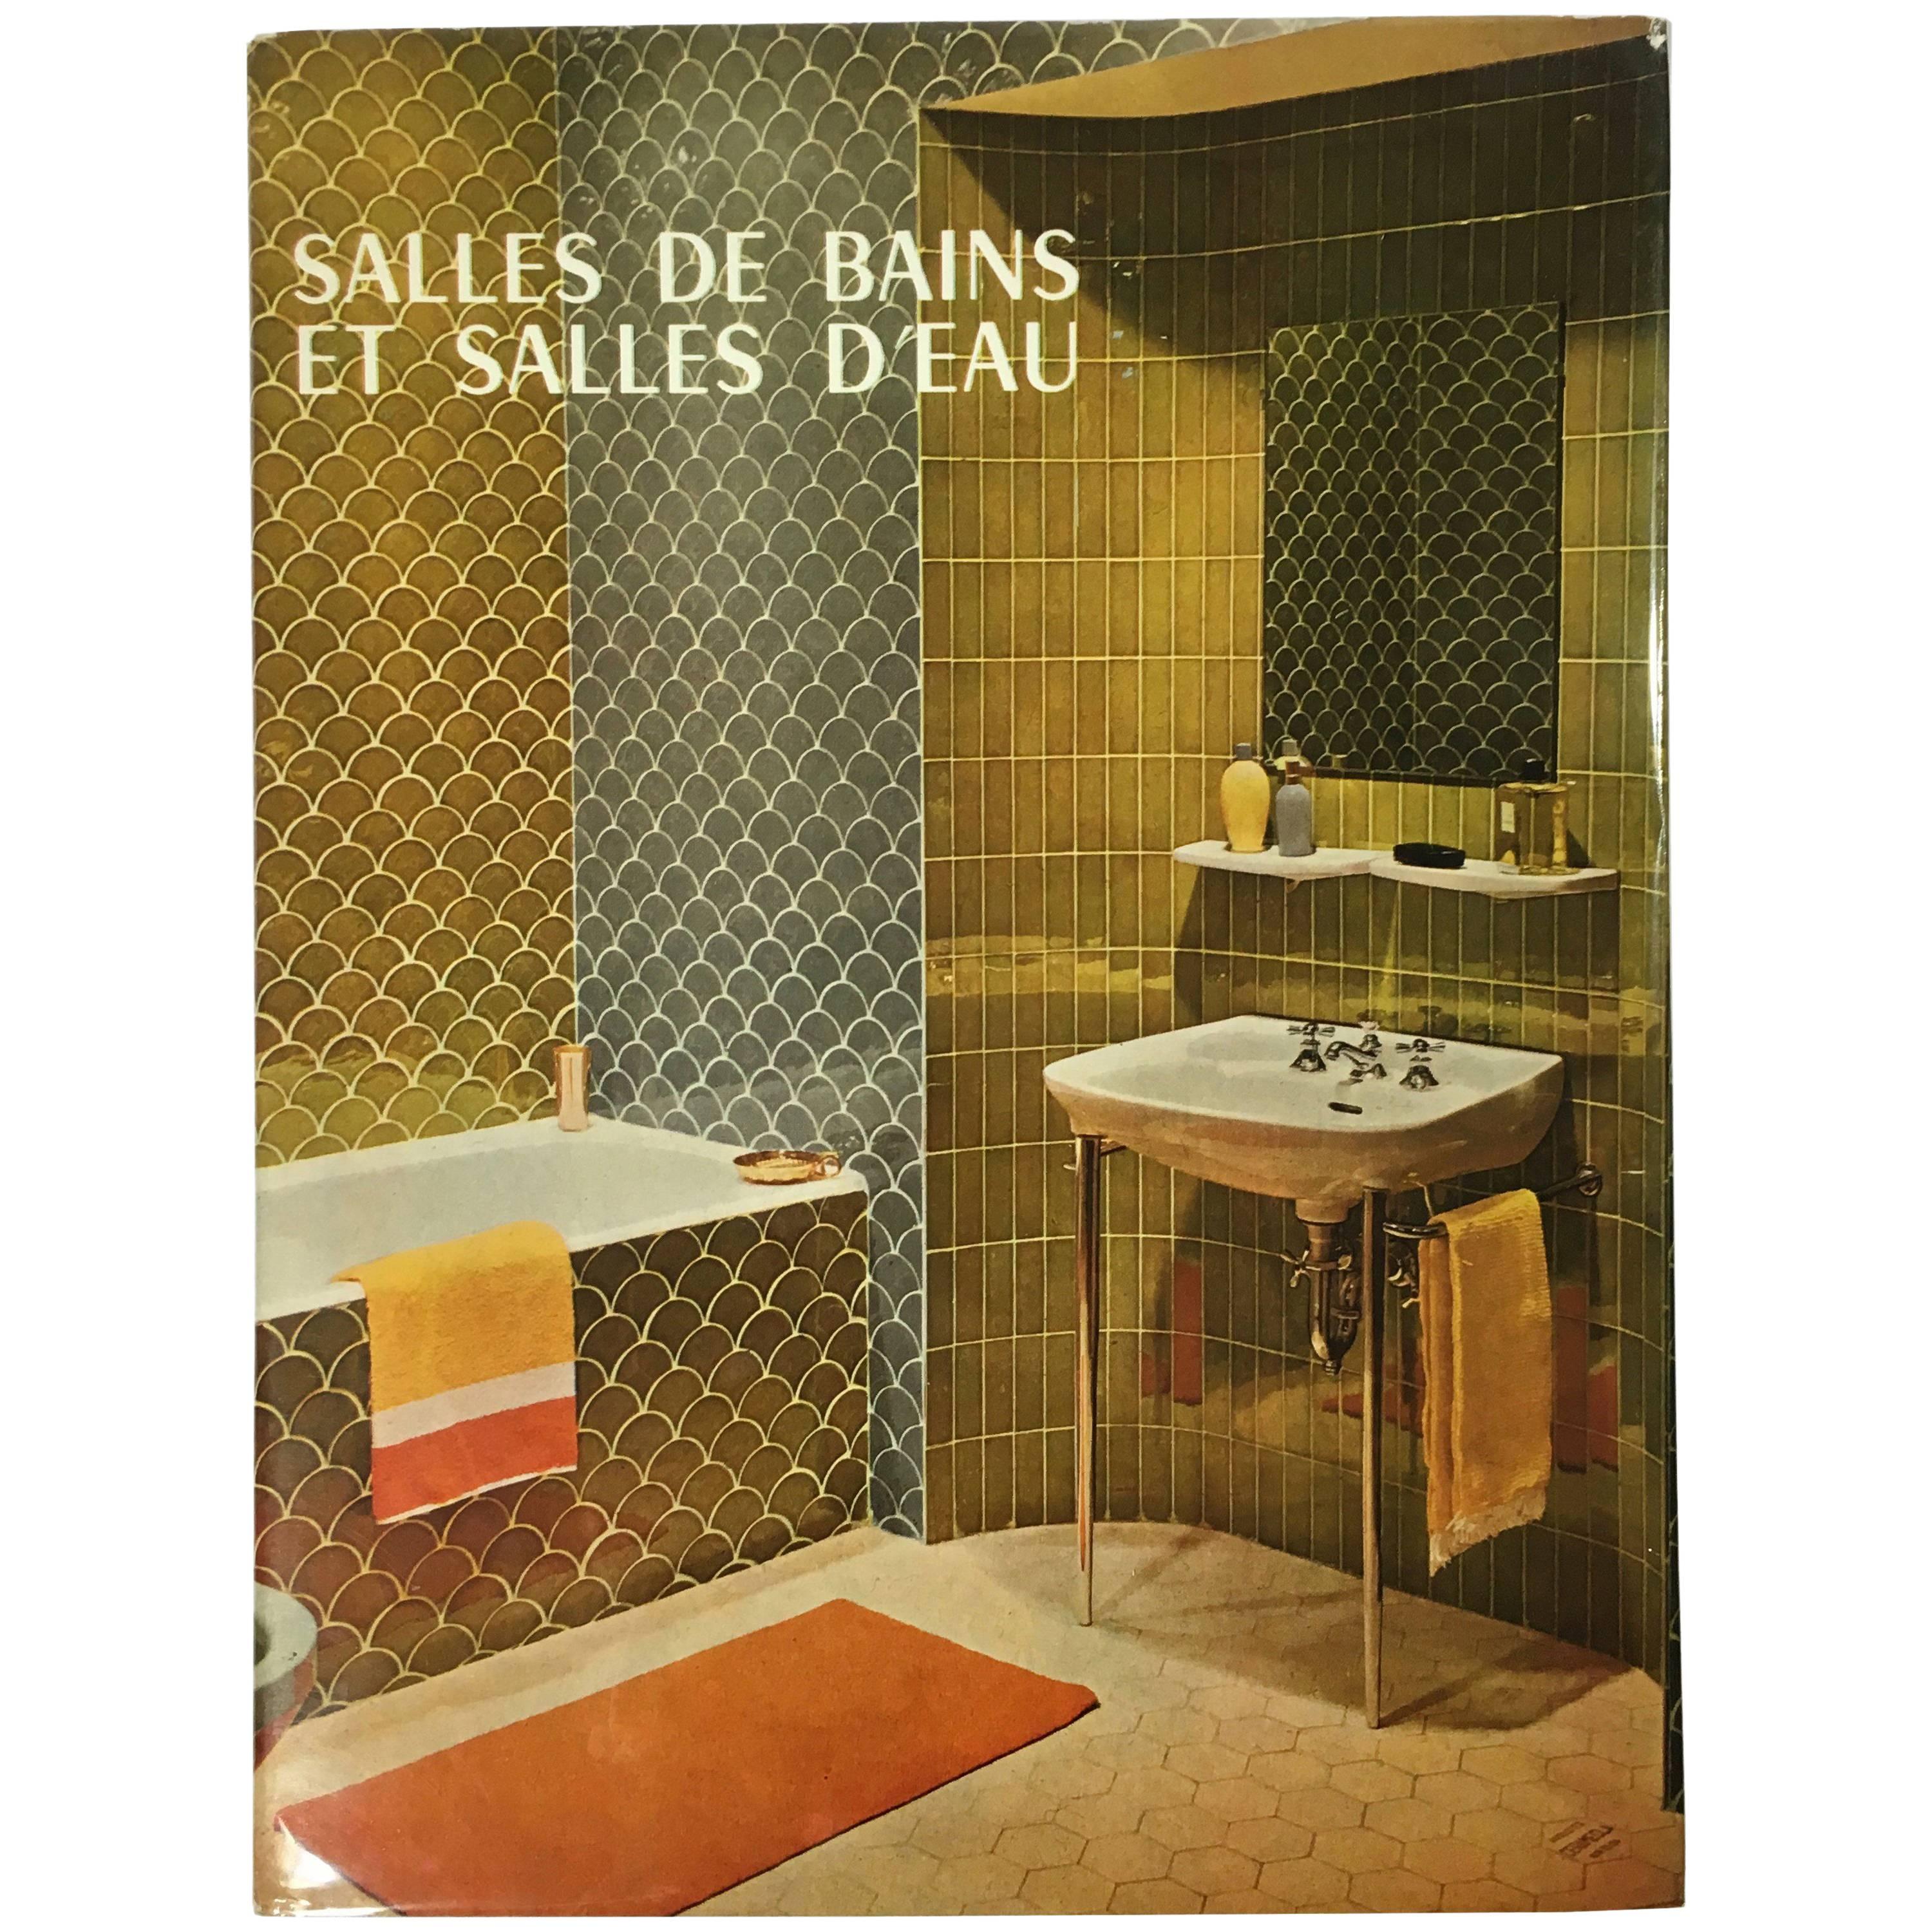 Wonderful Book on Bathroom Interiors, 1965